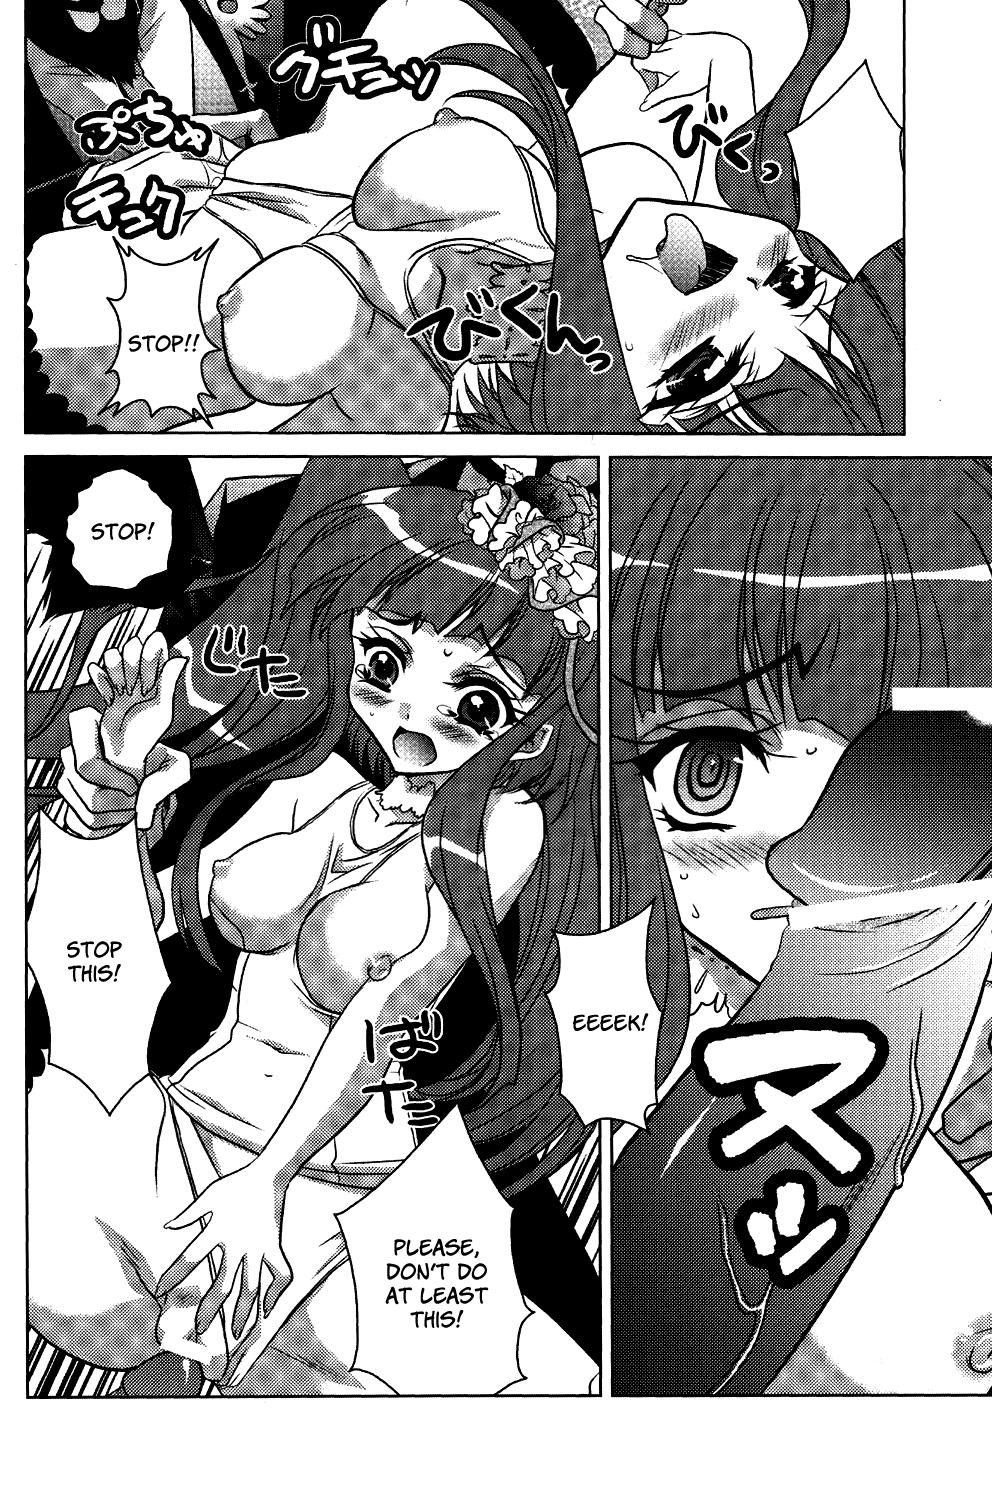 Off Milk Tea Party - Umineko no naku koro ni Shoplifter - Page 10